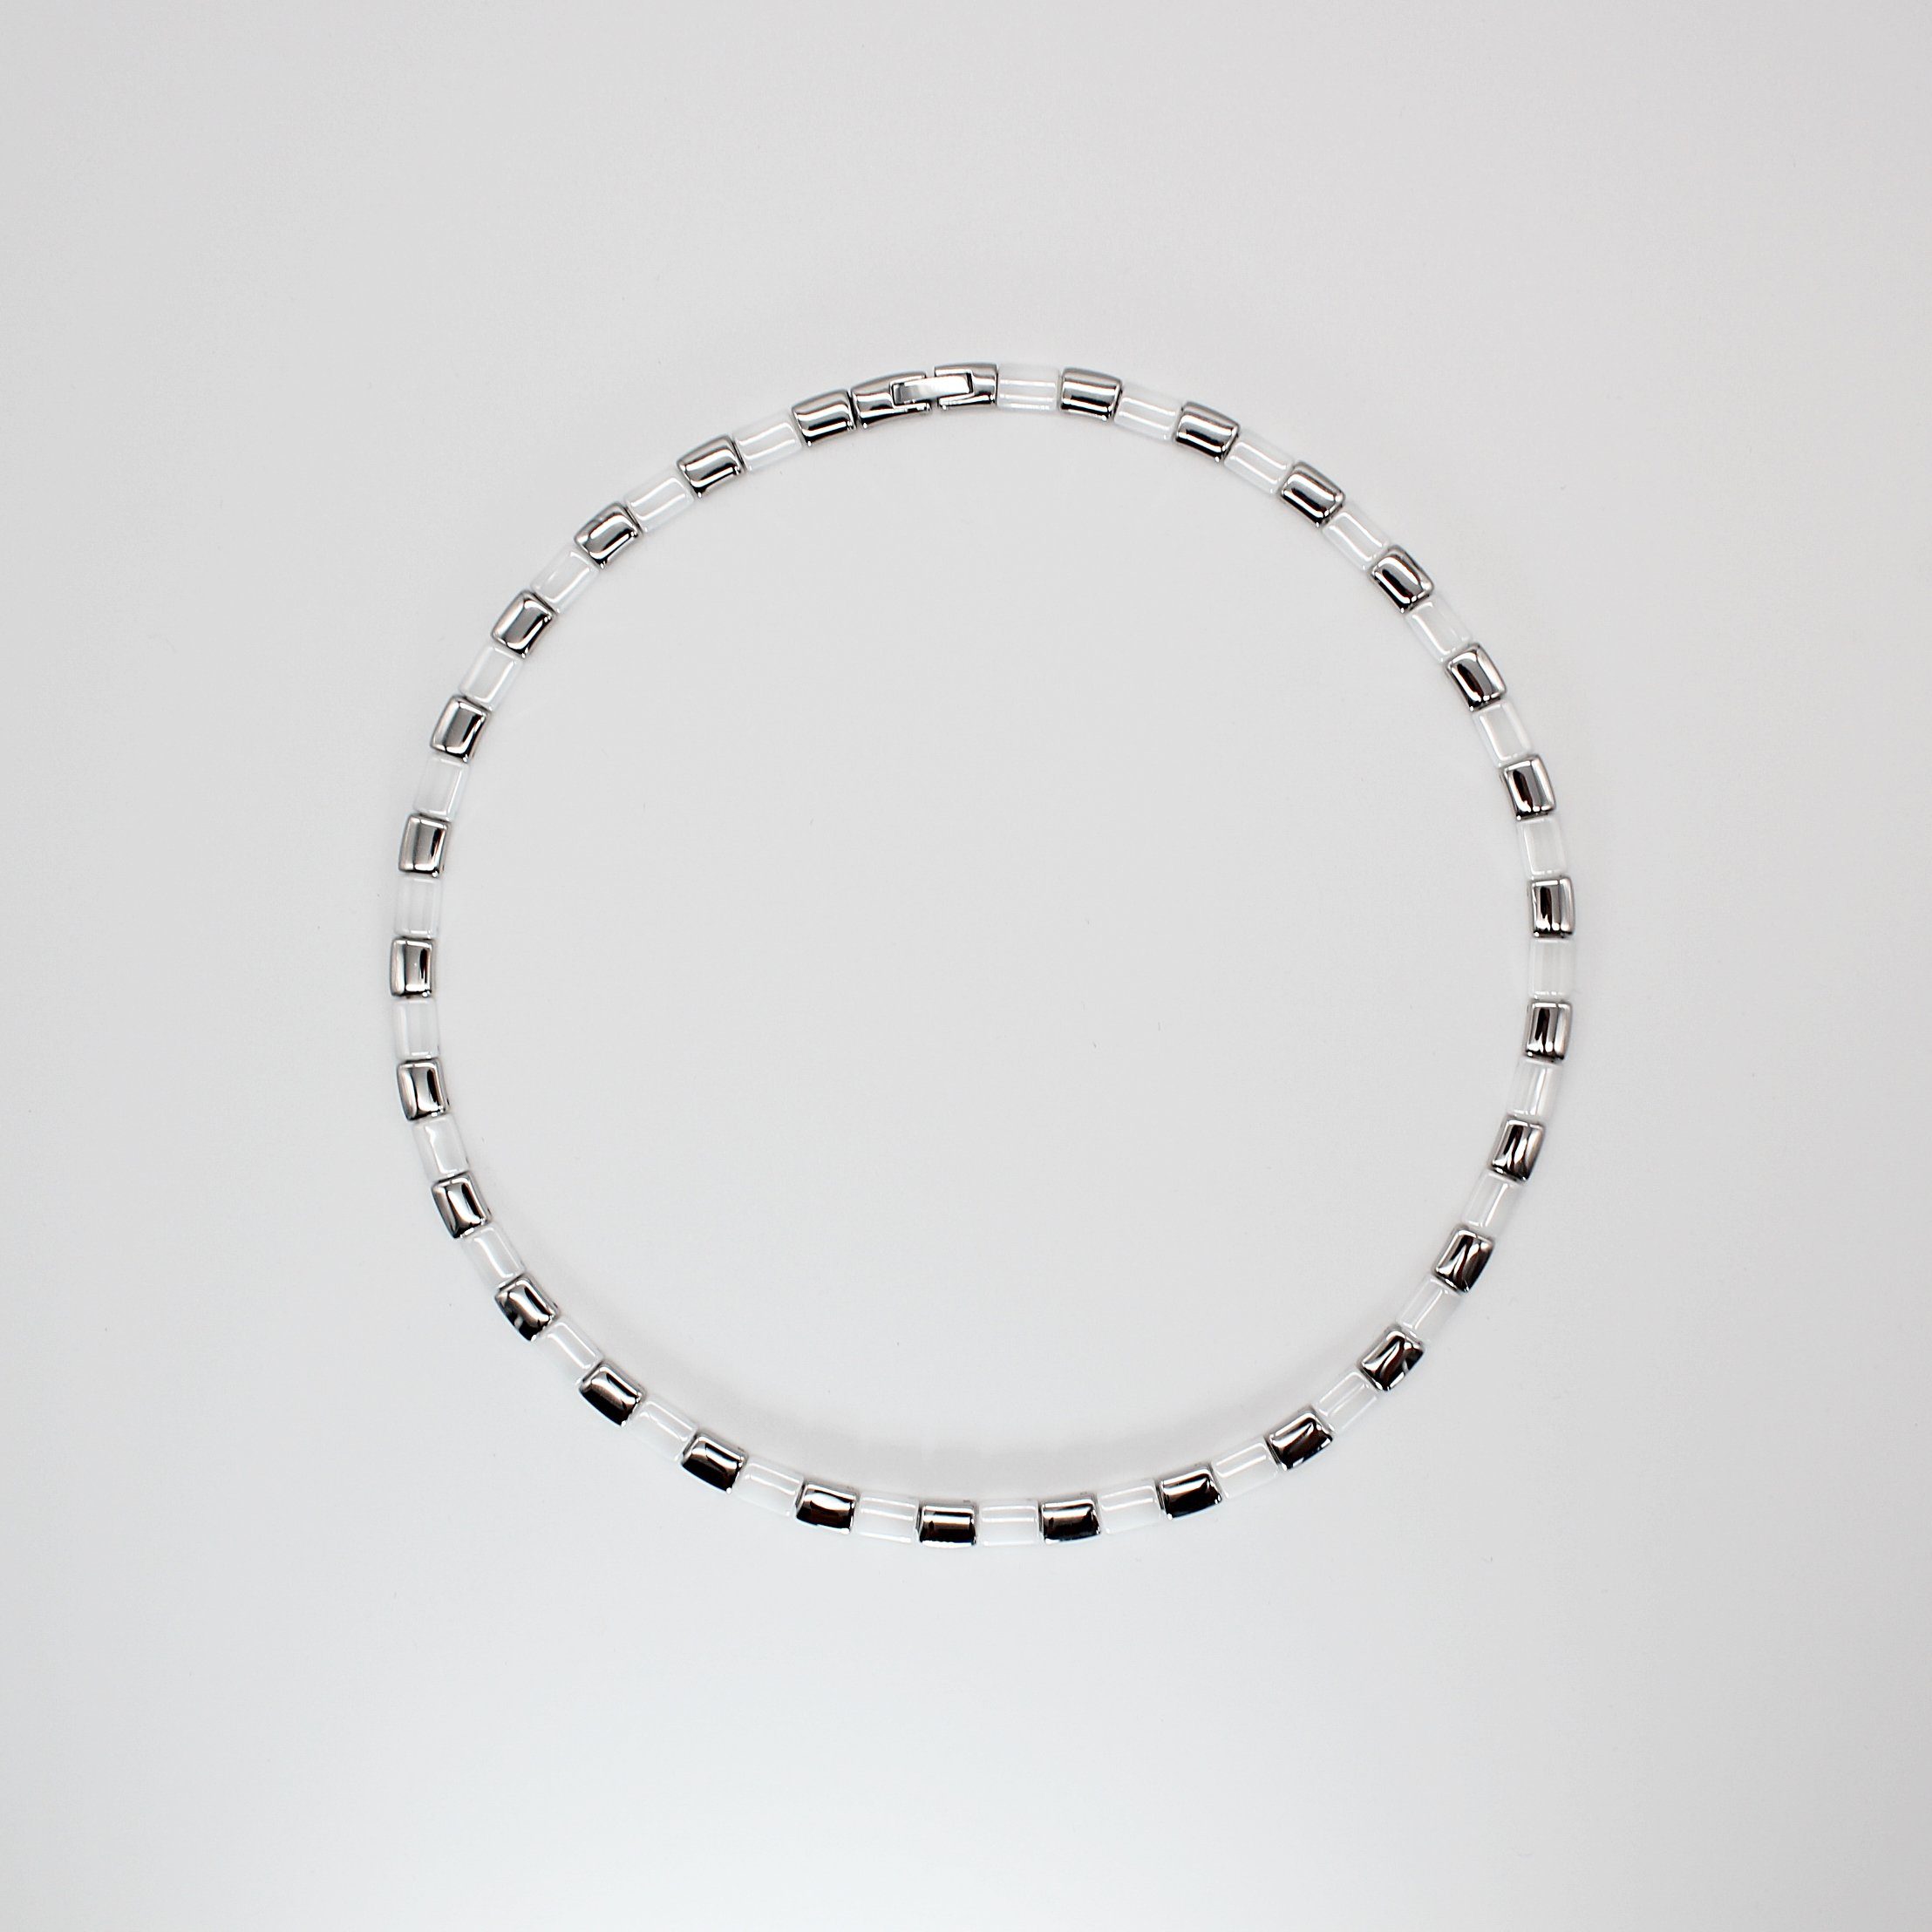 x Halskette und aus Keramik / mm), (Kettenlänge mm 6 49 Kettenbreite schwarzer 3 Edelstahl Collier Damenkette cm, Collier Geschenkschachtel ELLAWIL inklusive